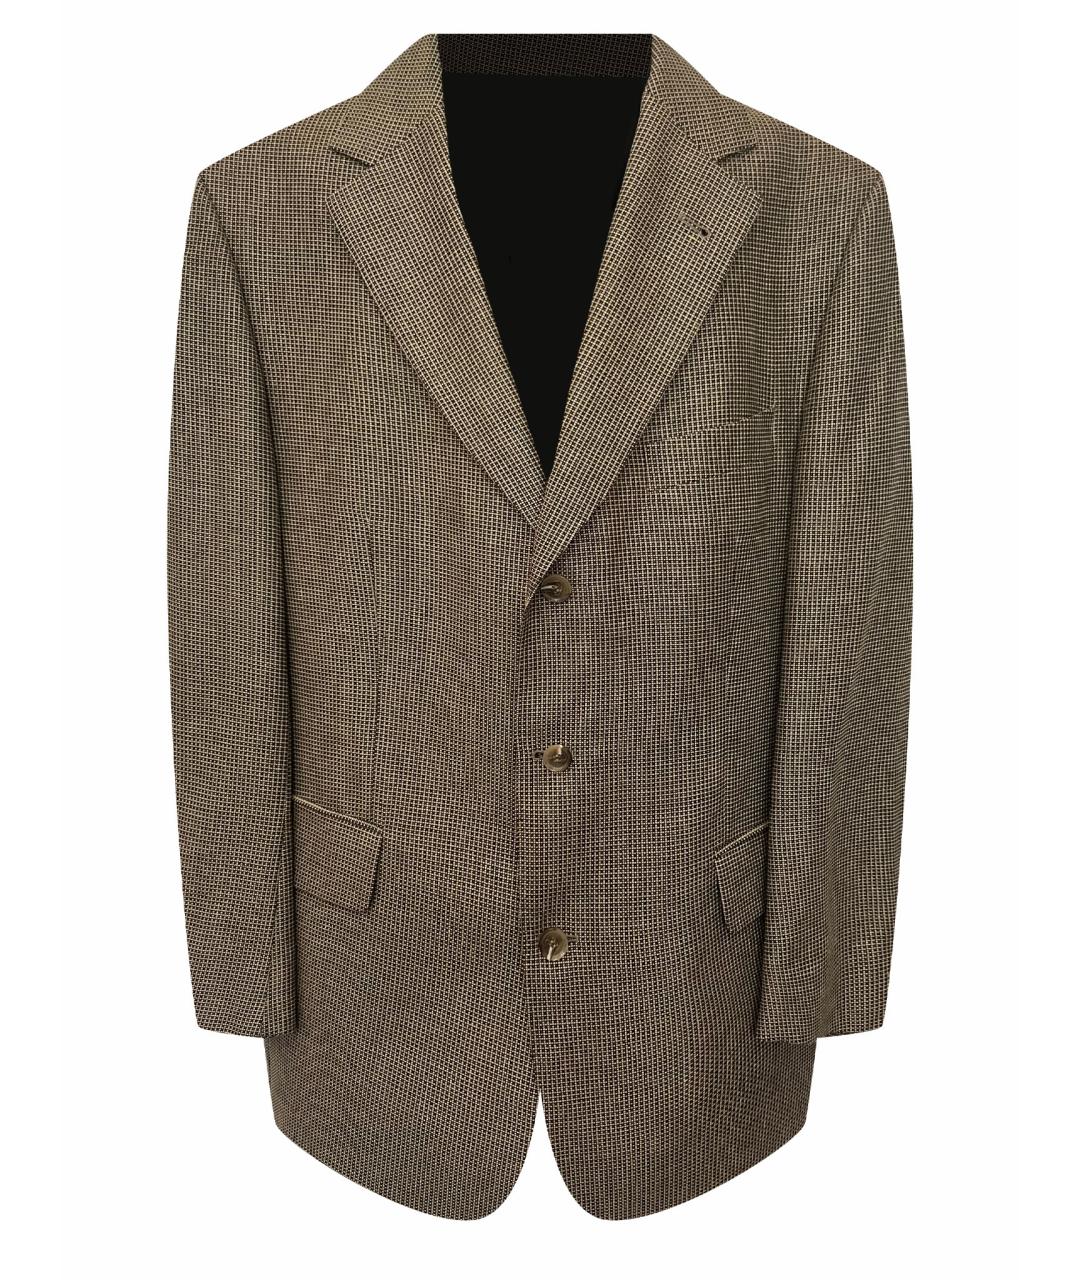 EDUARD DRESSLER Коричневый шерстяной пиджак, фото 1